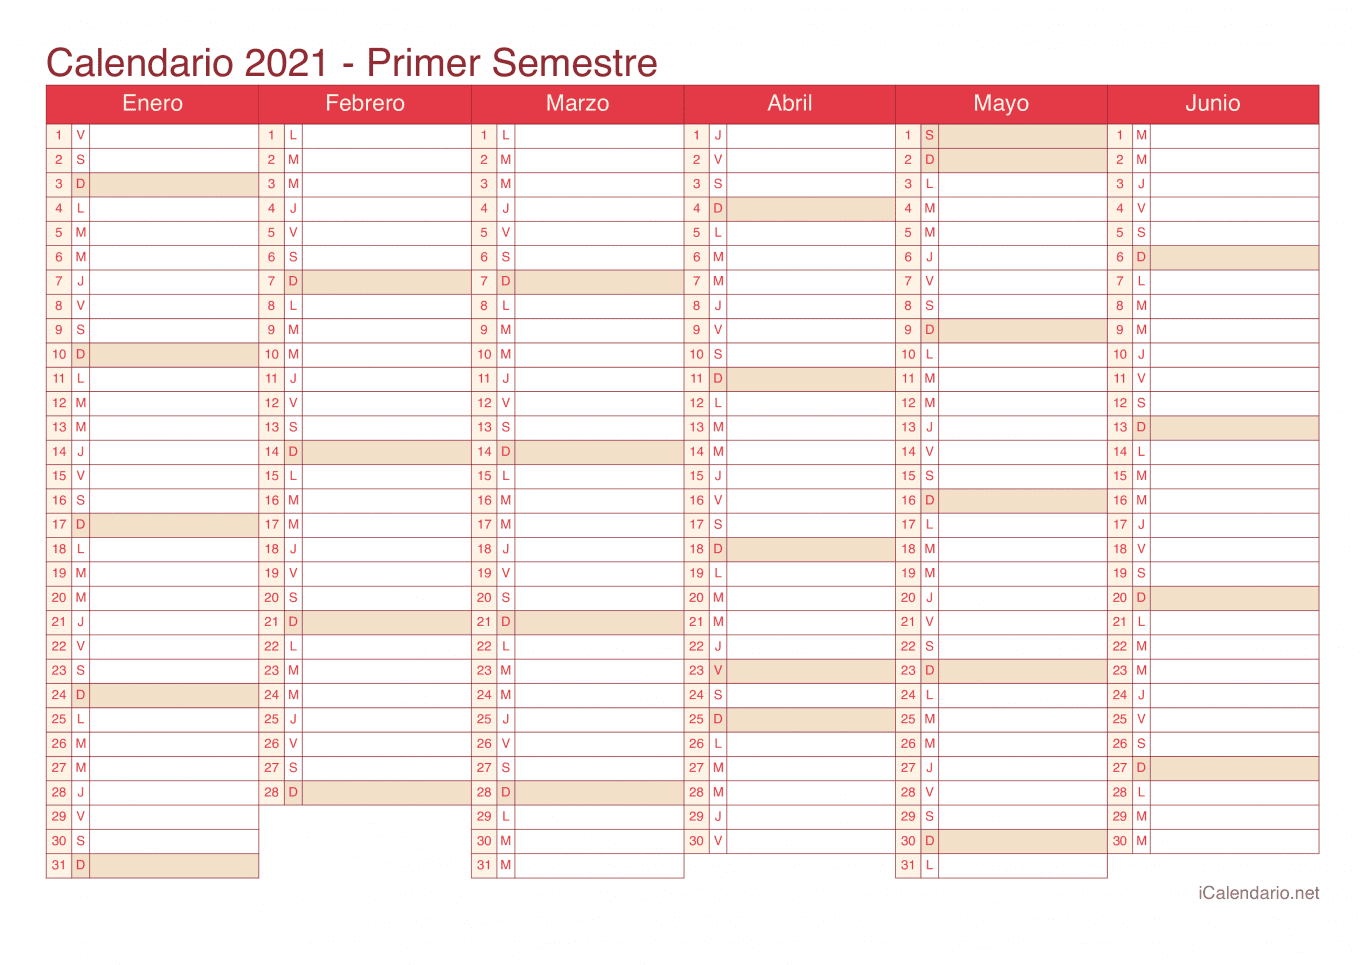 Calendario por semestre 2021 - Cherry